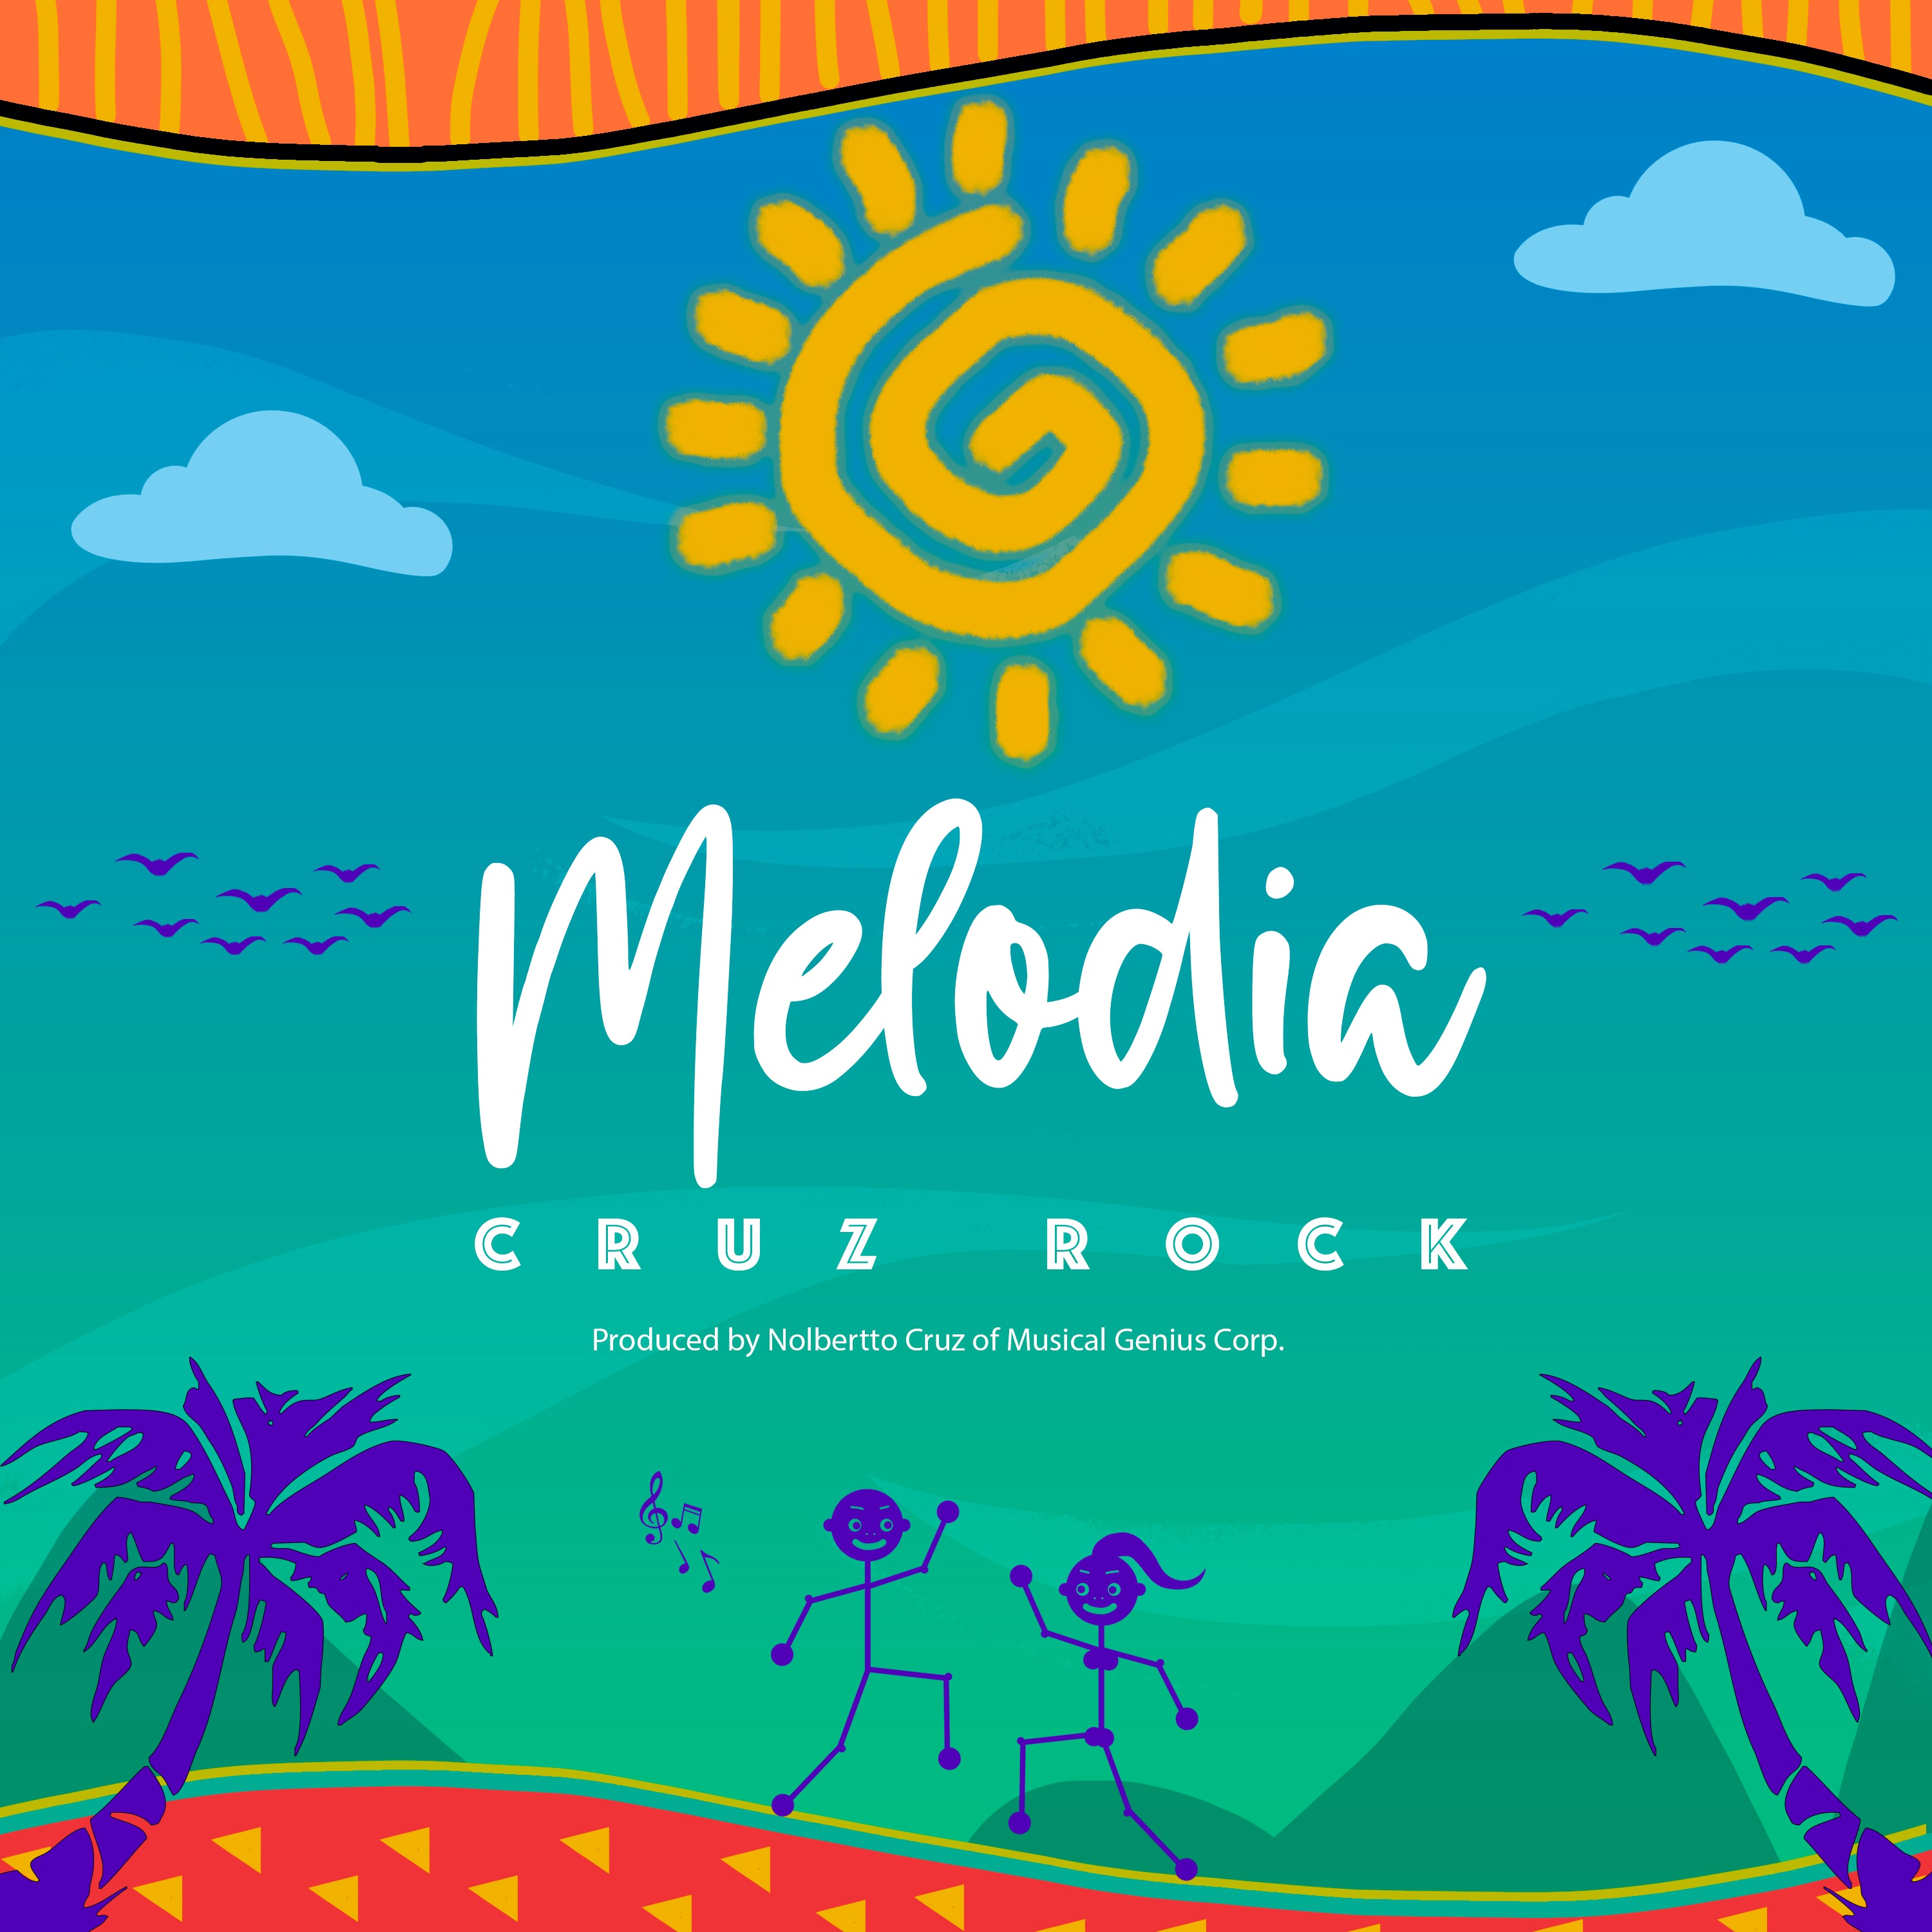 Daxistin Melodia by Cruz Rock